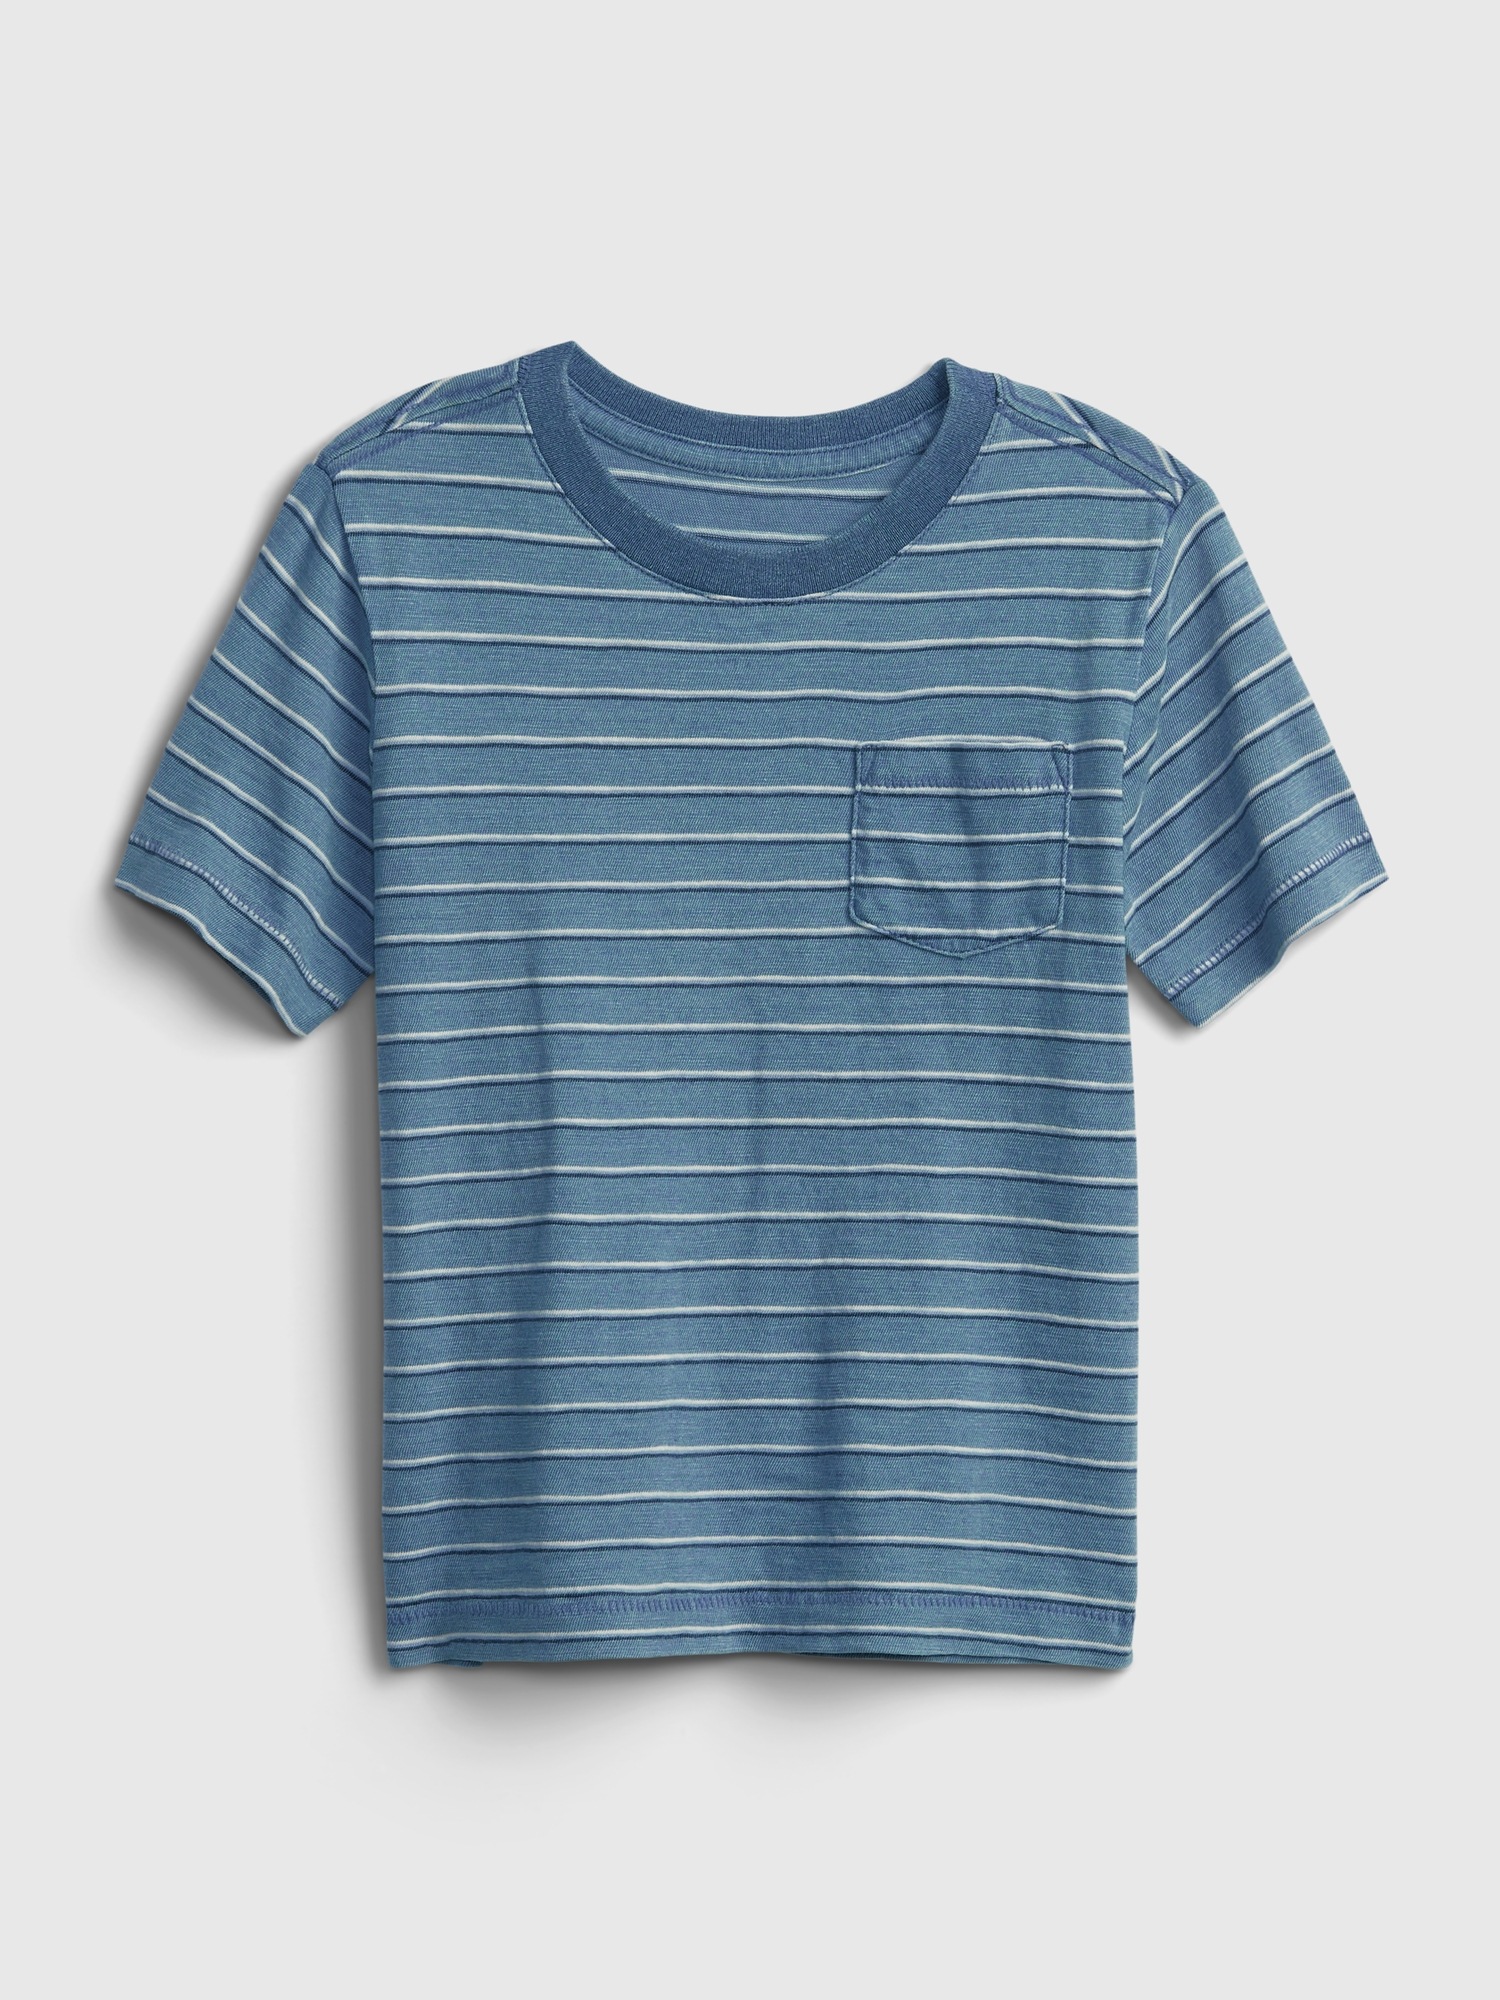 Toddler Print T-Shirt | Gap